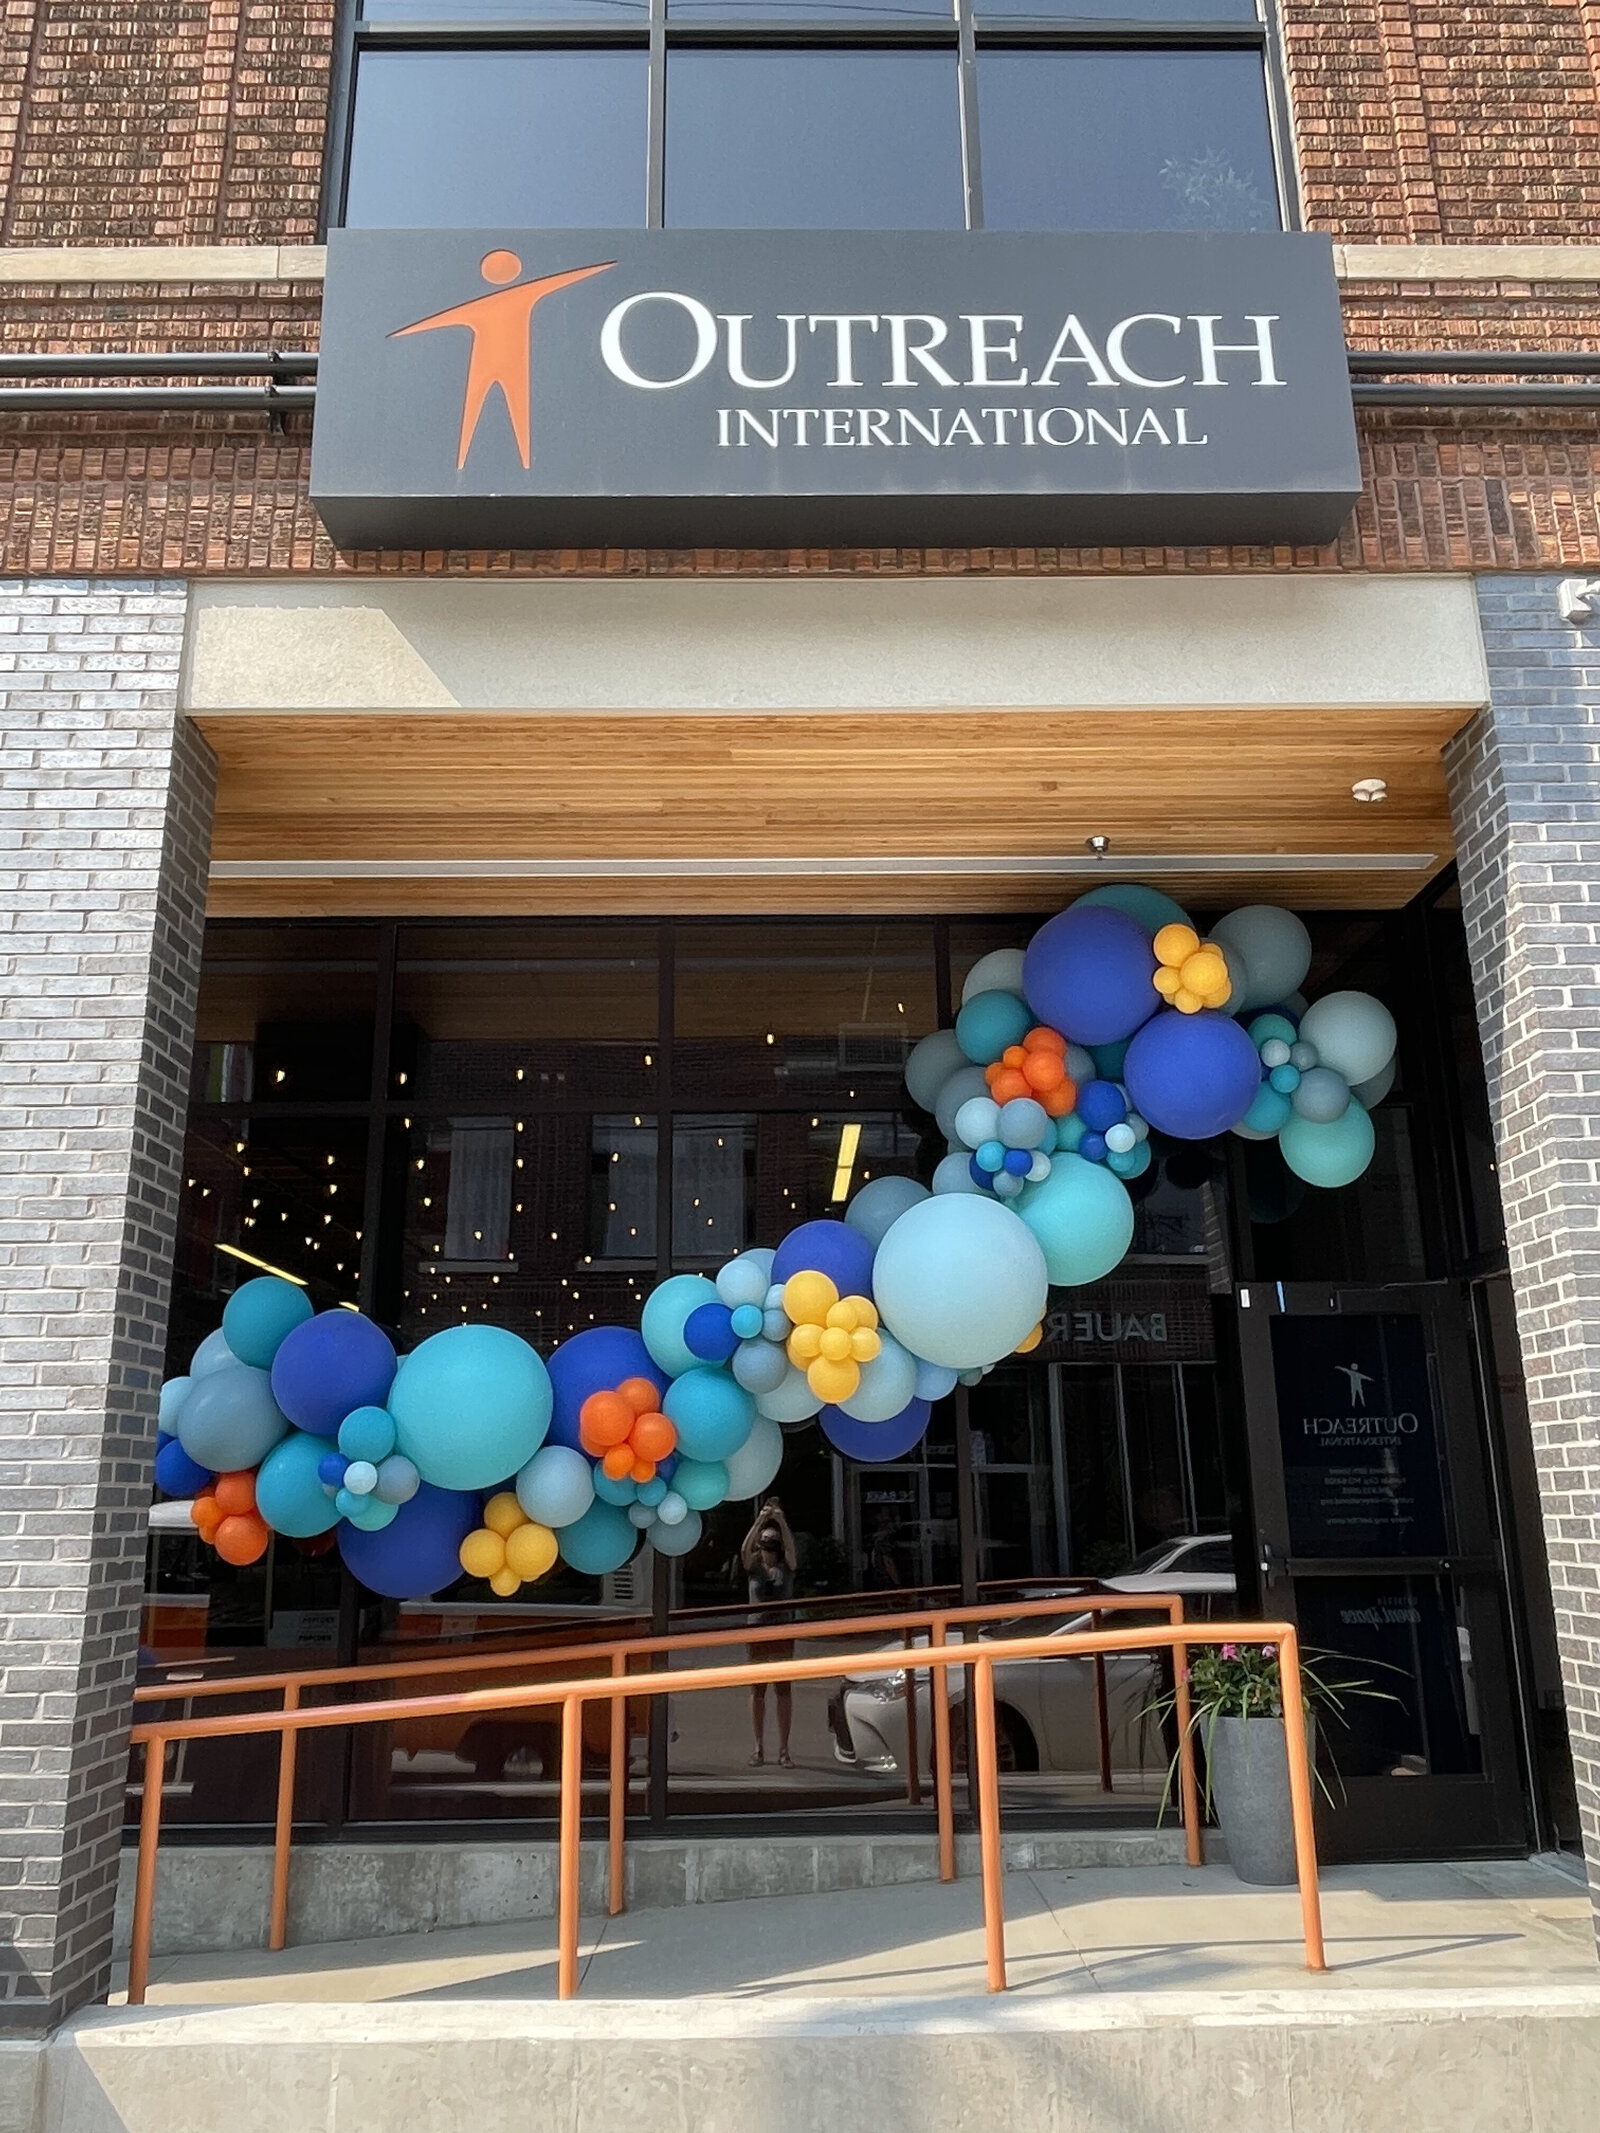 Outreach exterior with balloons